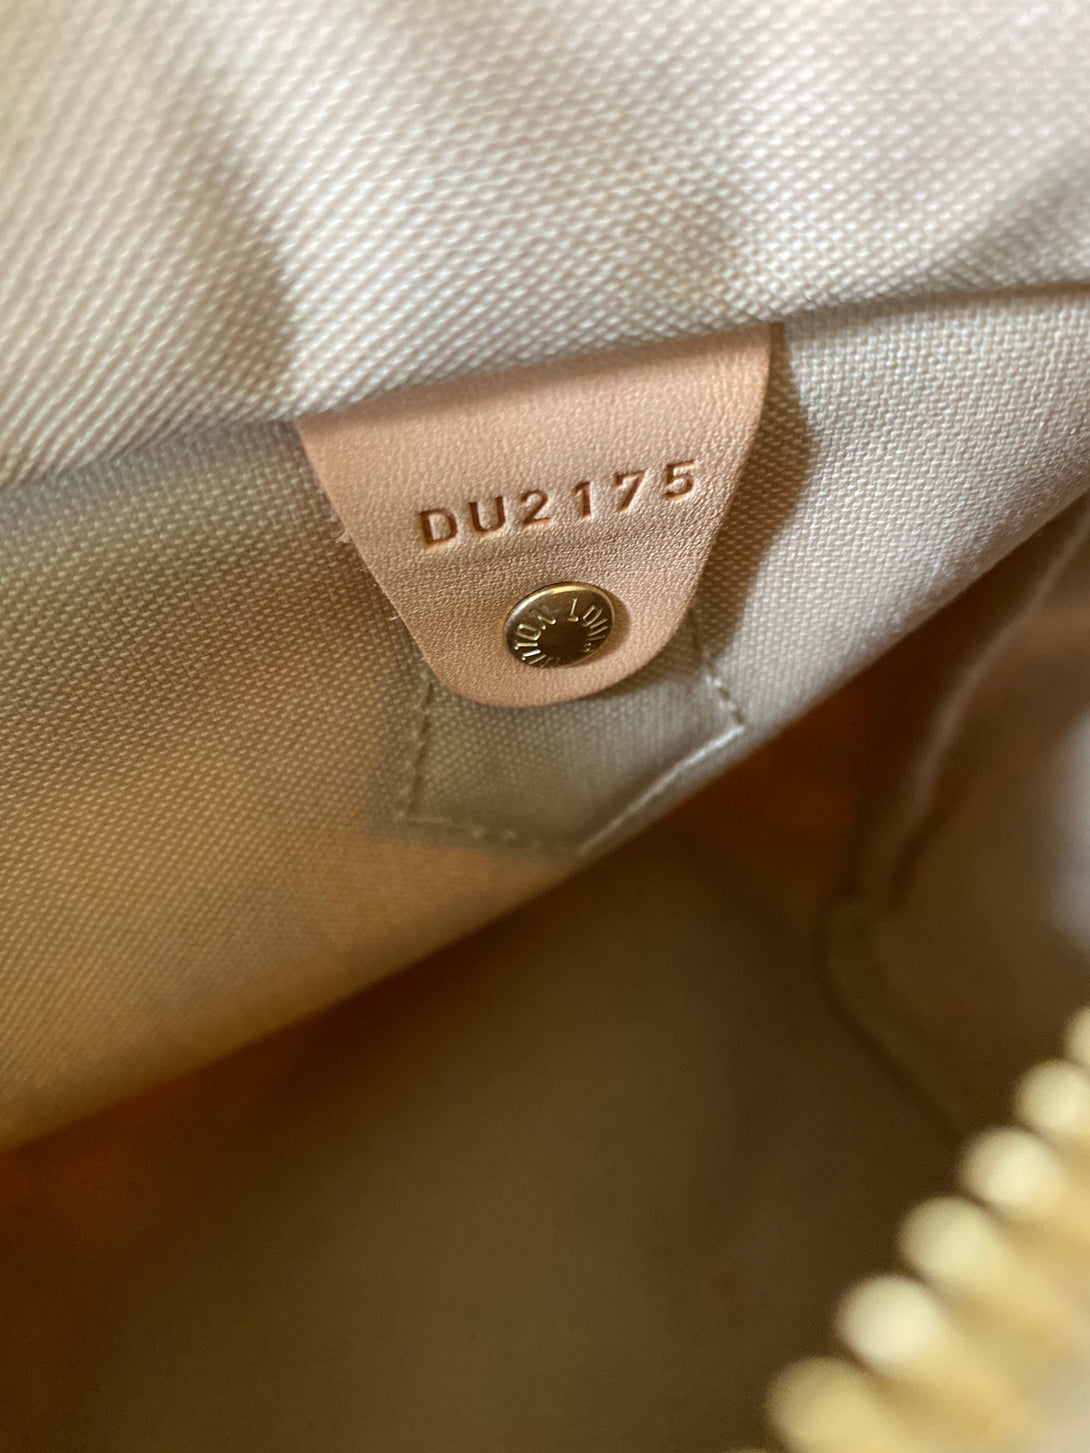 Louis Vuitton Damier Azur Speedy Bandouliere 25 - As Seen on Instagram Live 16/08/20 - Siopaella Designer Exchange